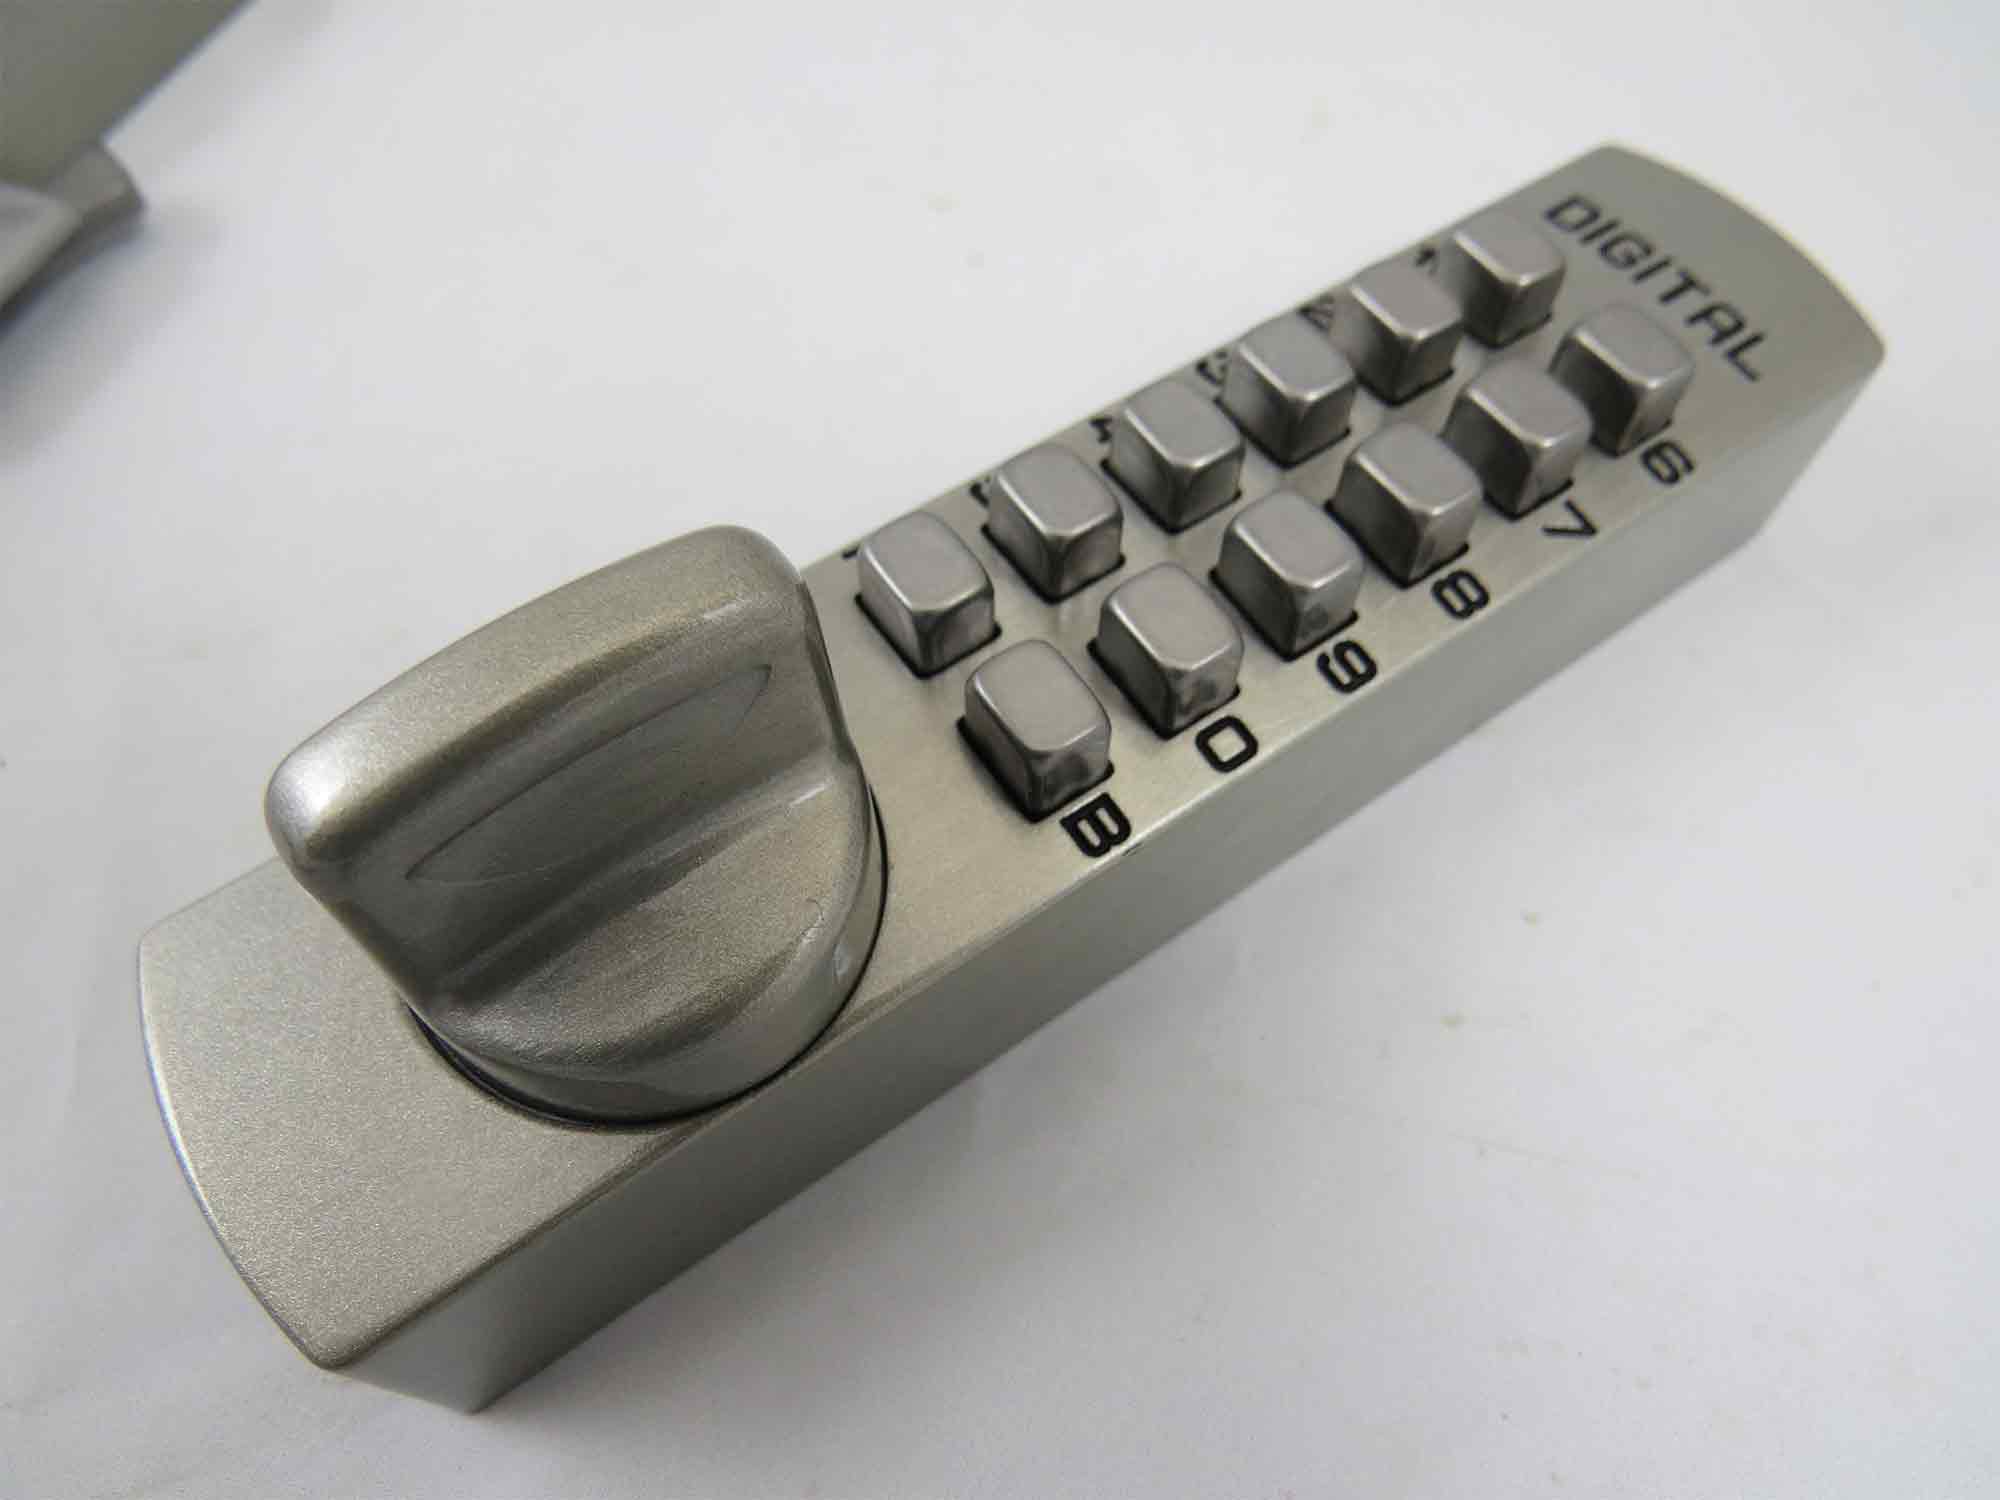 Lockey C120 Surface-Mount Cabinet Slide-Bar Deadbolt Keypad Lock